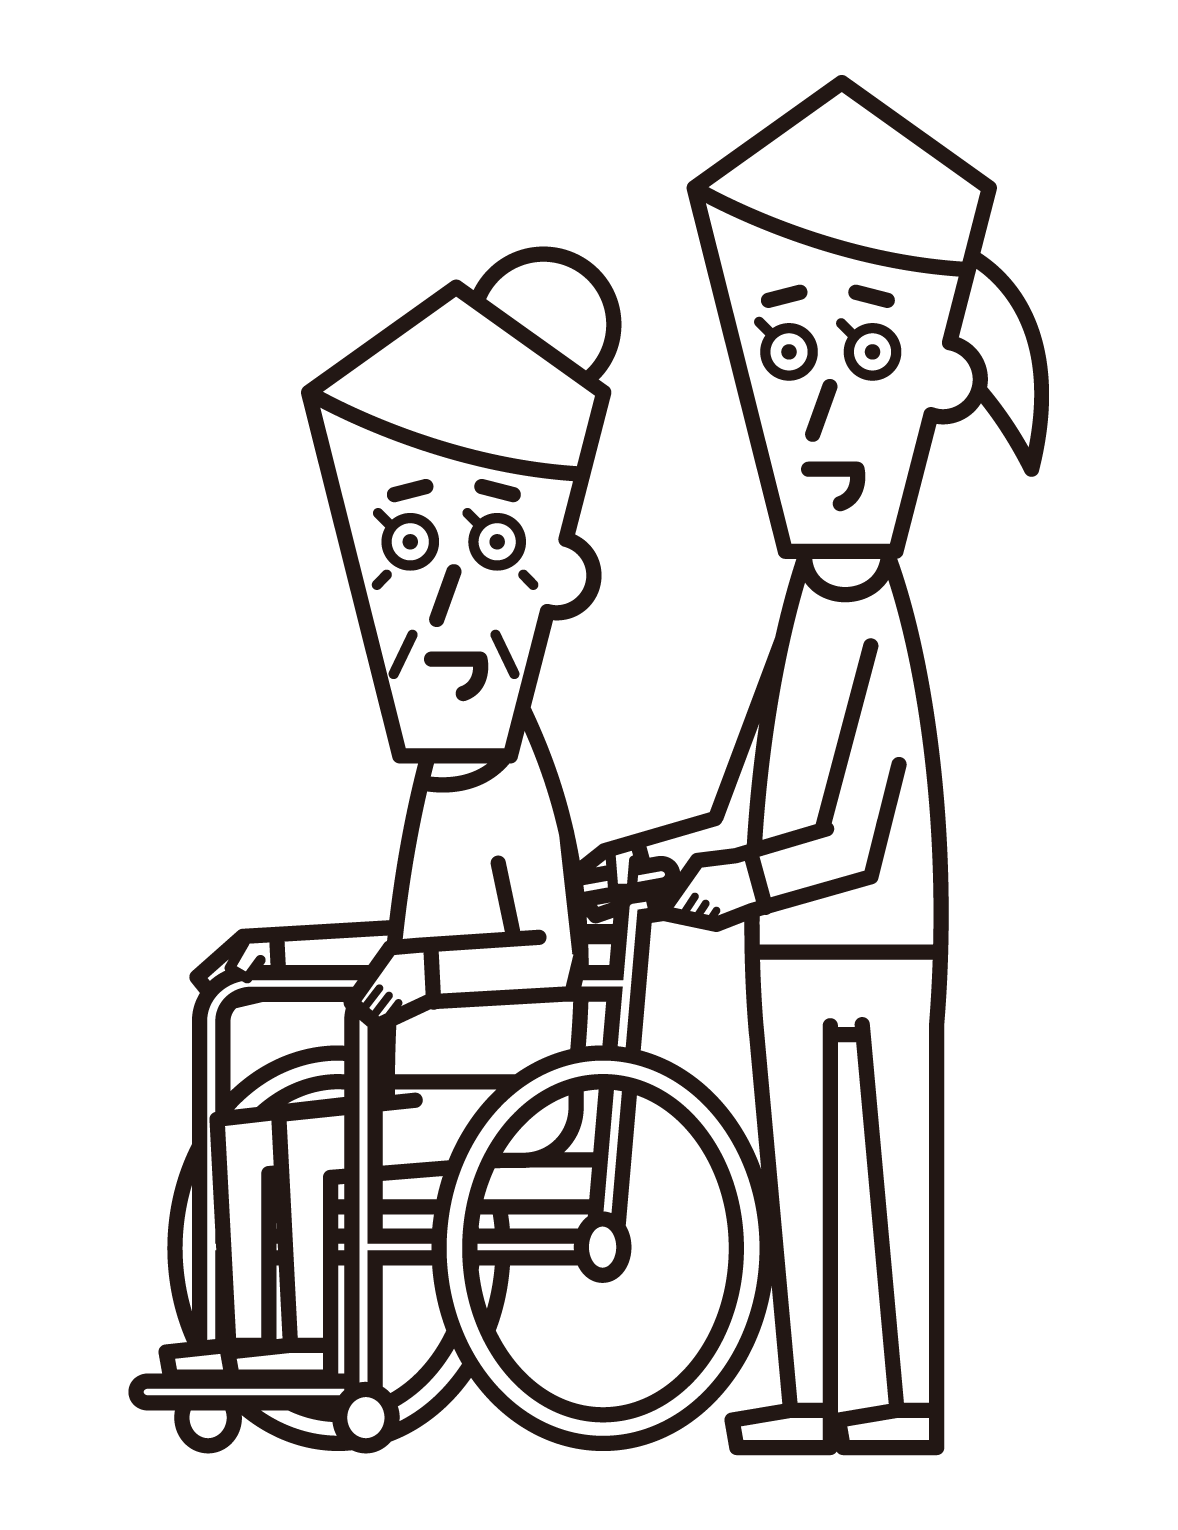 坐在輪椅上的人（祖母）和推人（女性）的插圖